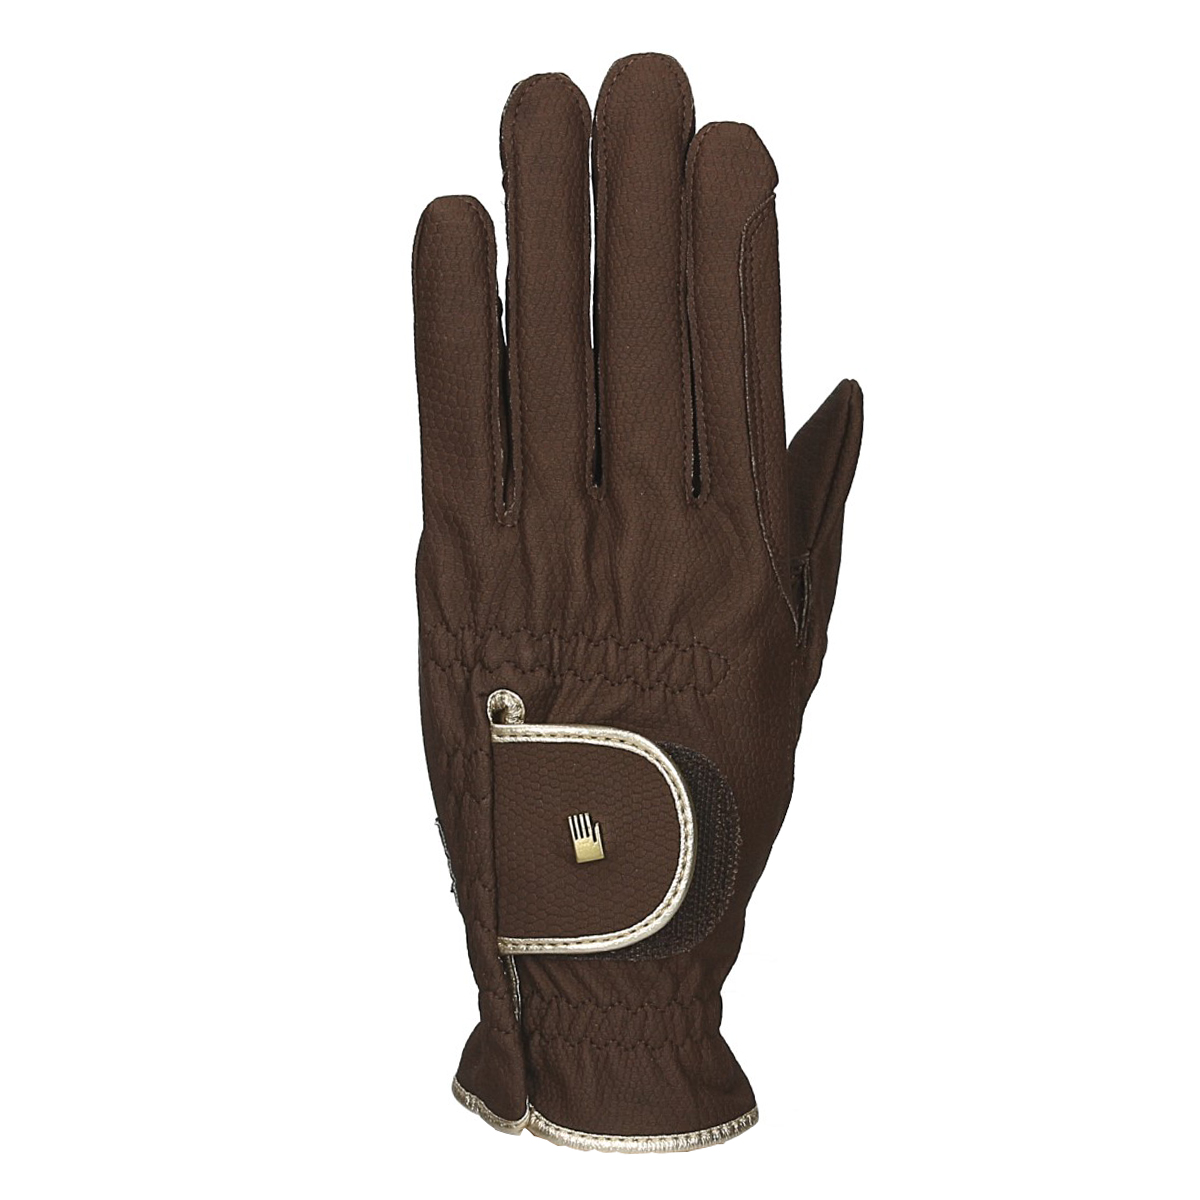 Handschoenen Roeckl Bi Lined Lona, 6 in bruin/goud